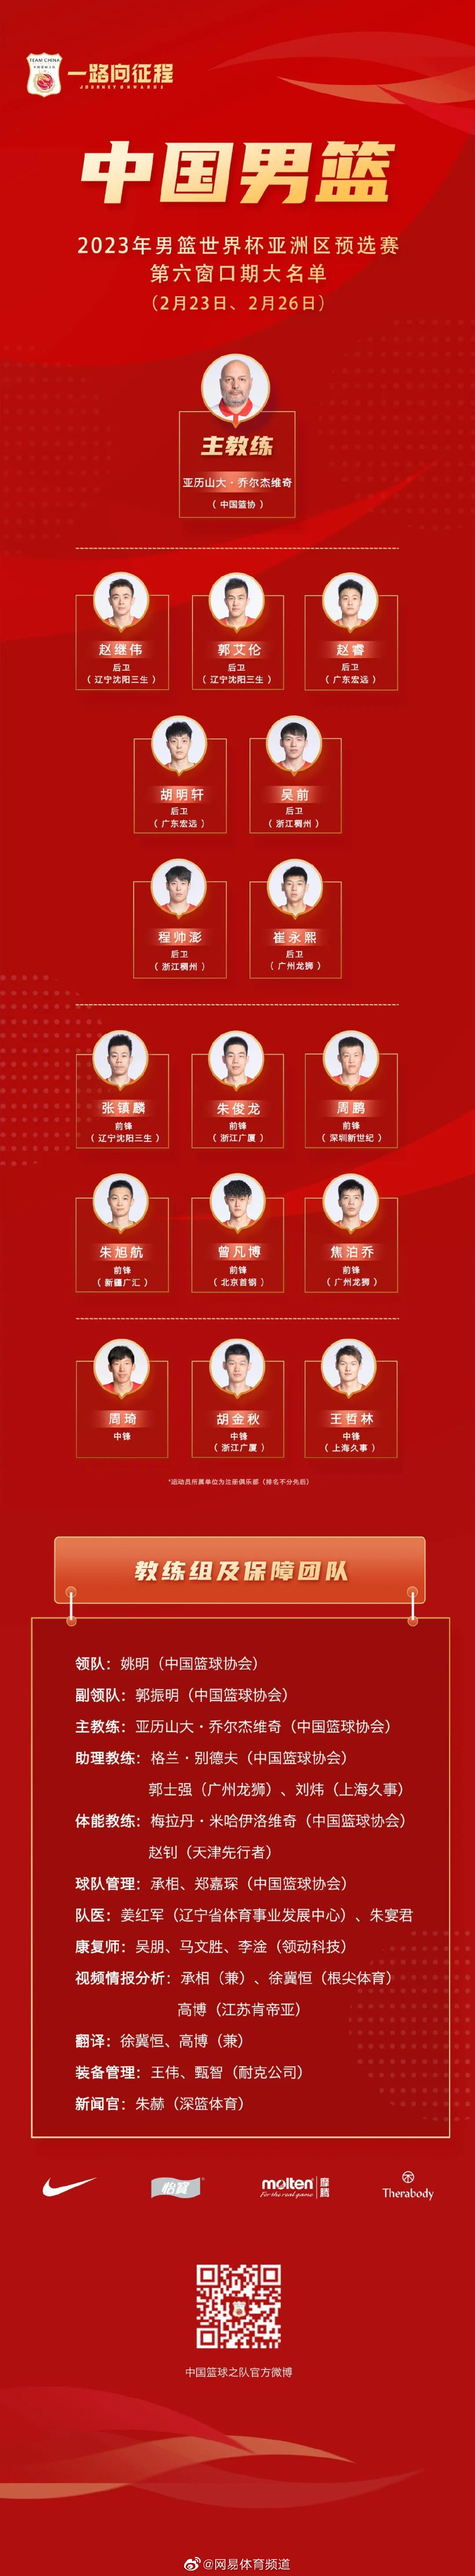 中国男篮世预赛16人大名单 周琦、郭艾伦领衔